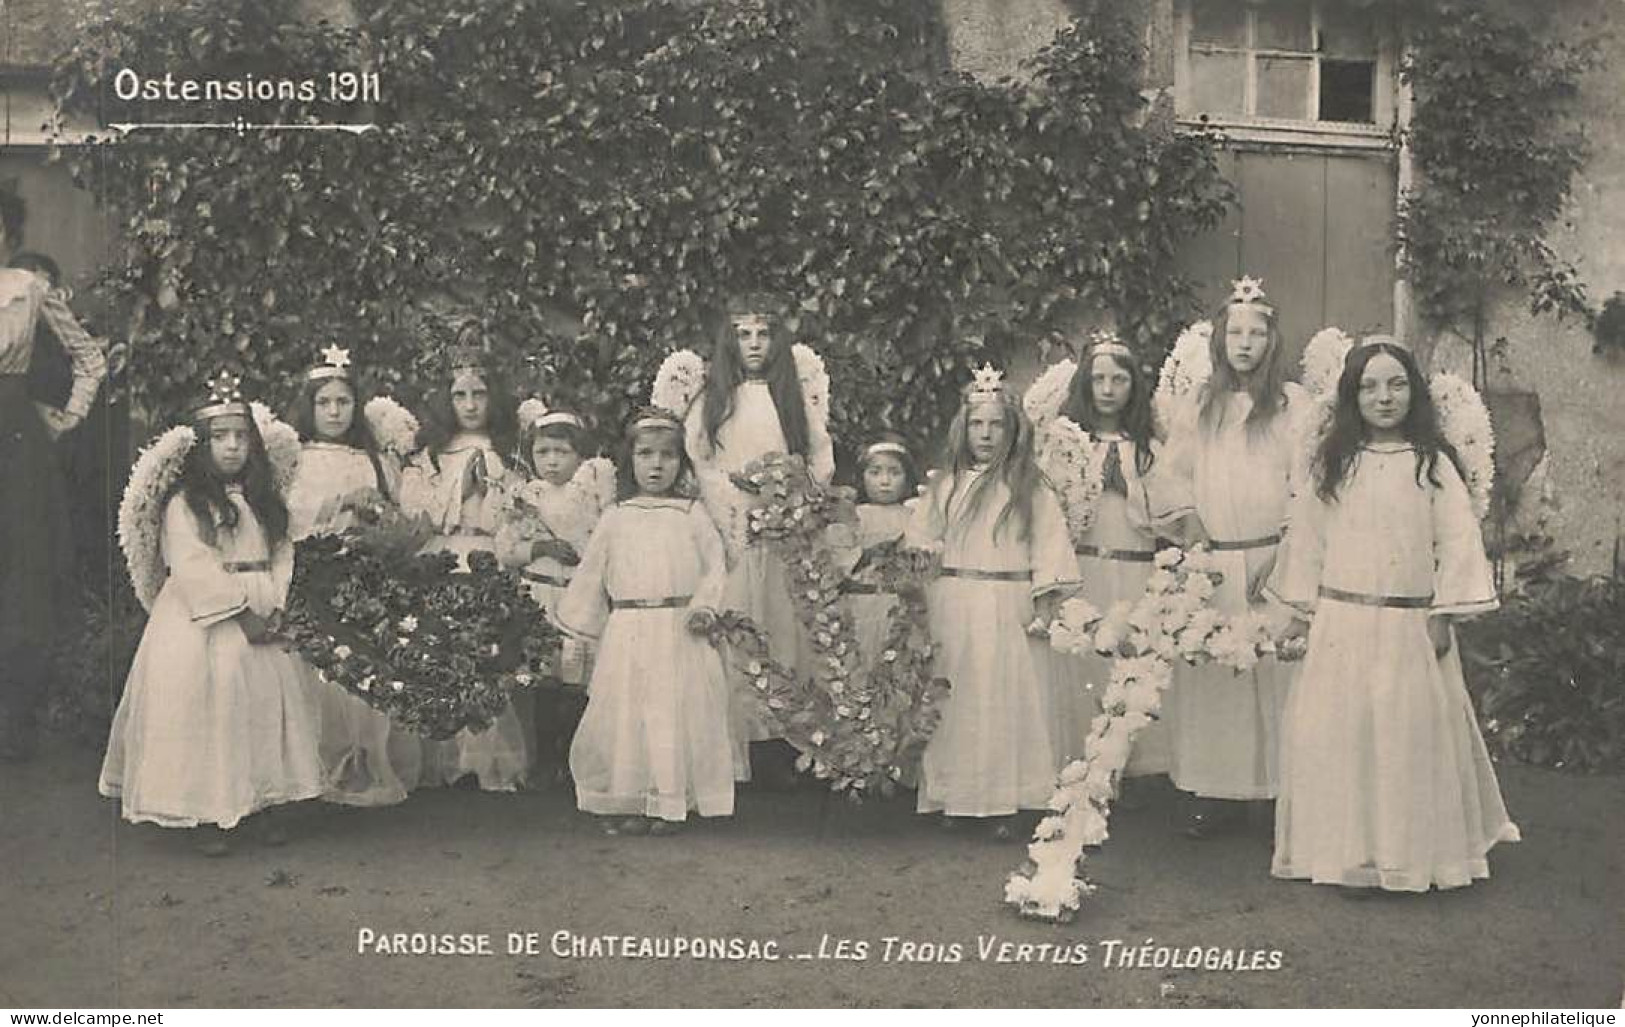 TOP - 87 - HAUTE VIENNE - CHATEAUPONSAC - Carte Photo Paroisse - Les Trois Vertus Théologales Ostensions 1911 - FR87-04 - Chateauponsac